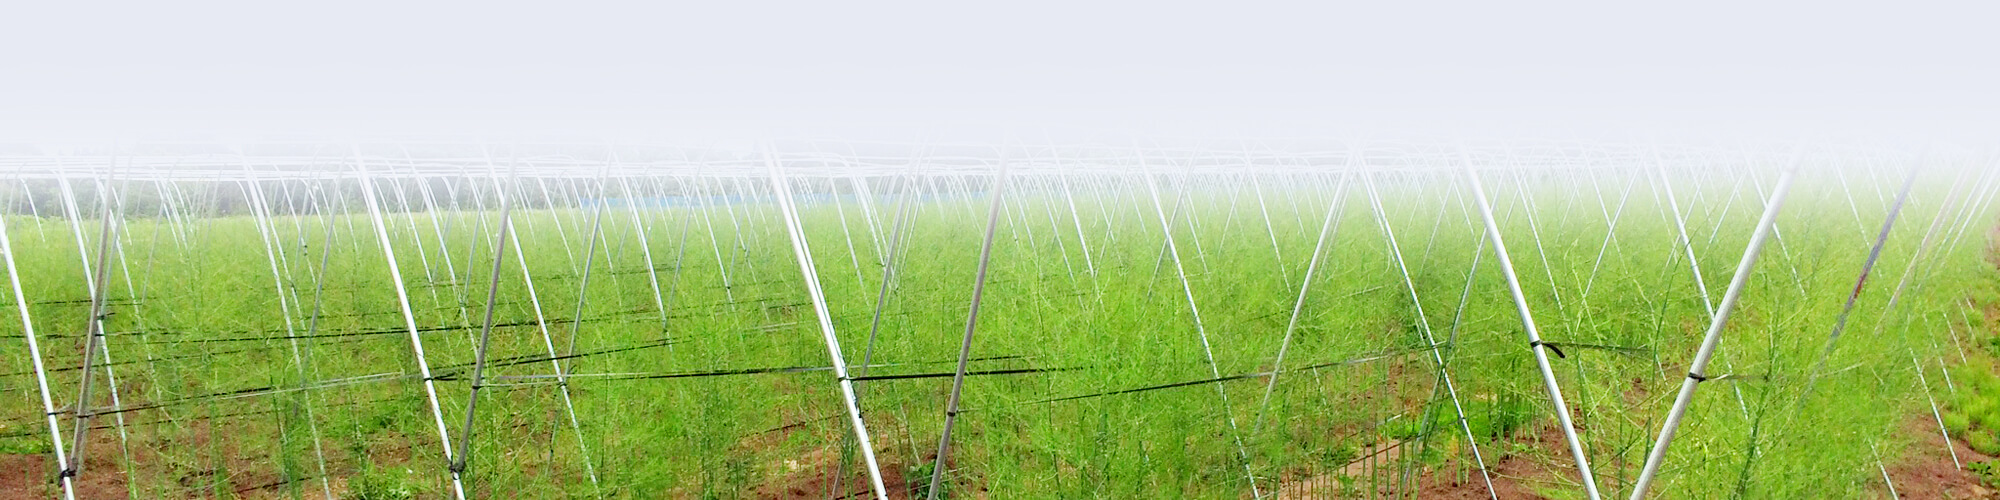 アスパラガス畑